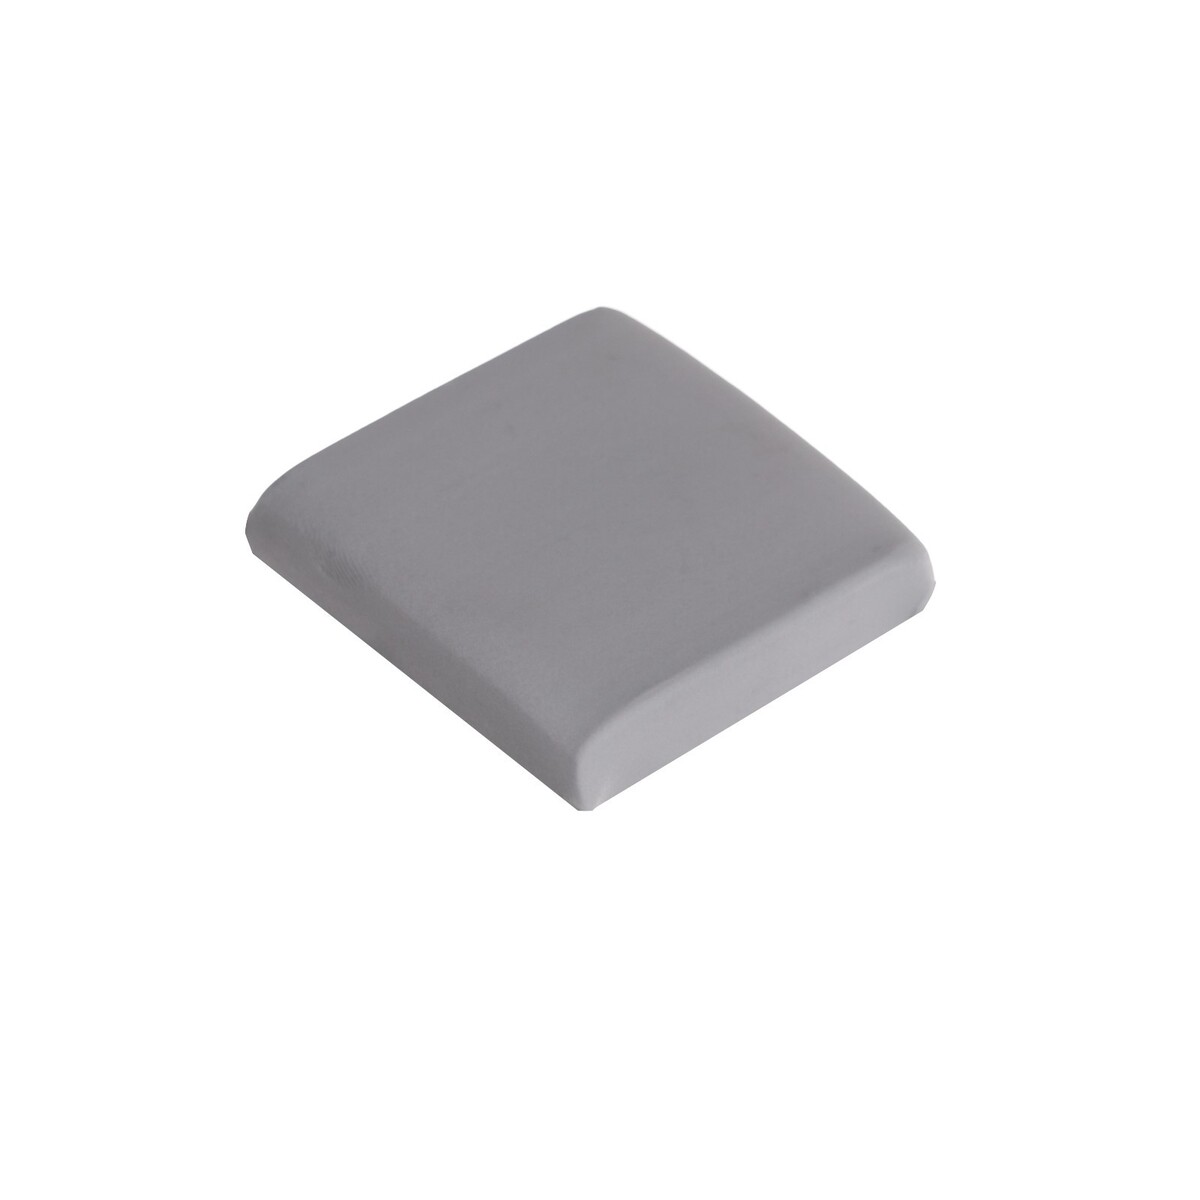 Ластик клячка прямоугольный серый, размер 40 х 35 х 10 мм ластик grip 2001 трехгранный серый